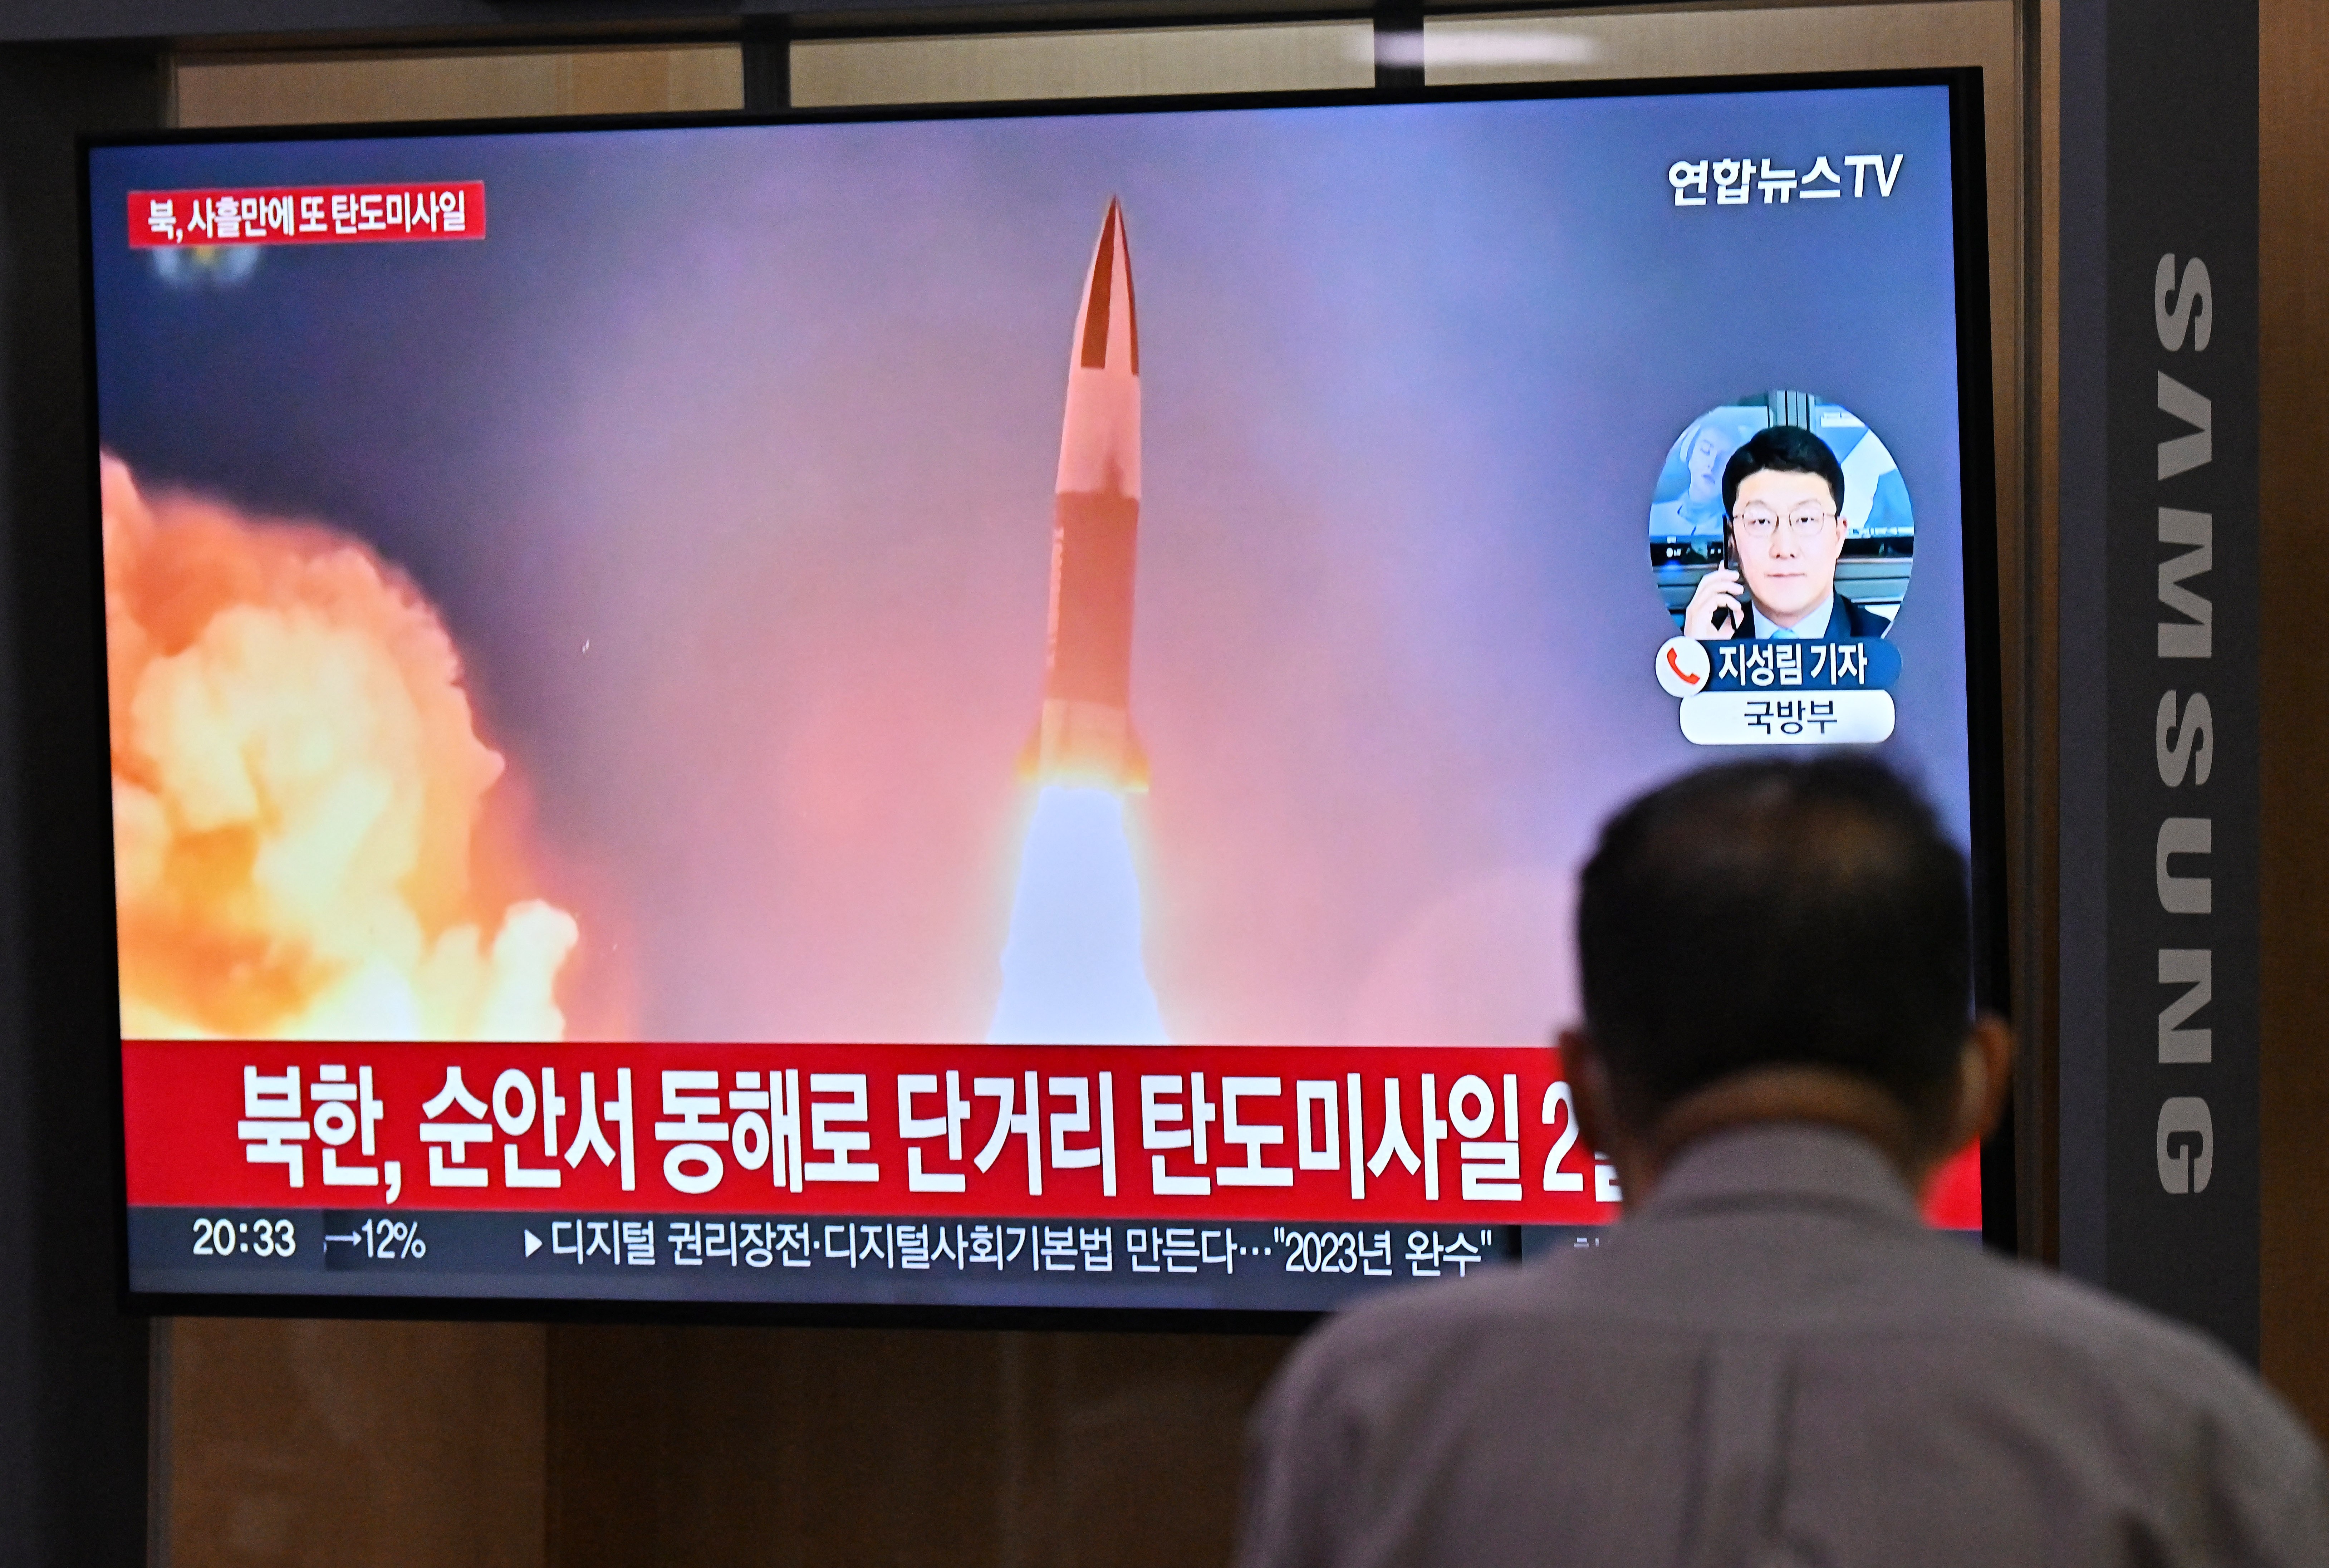 Coreia do Norte dispara mísseis balísticos antes de visita de vice dos EUA a Seul